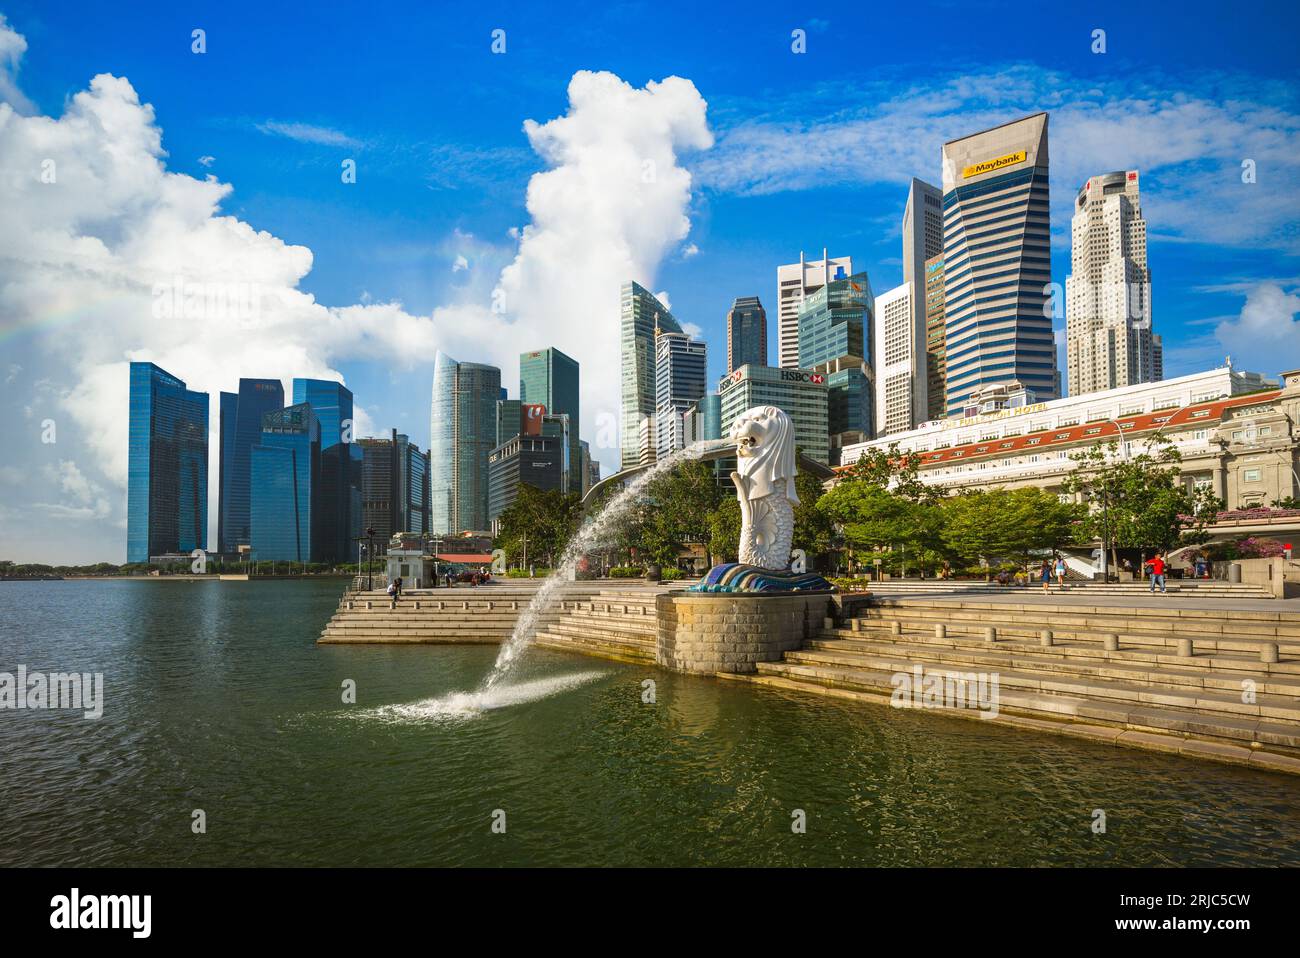 6 février 2020 : merlion et sable au parc merlion, dans la baie de la marina de singapour. Merlion est le symbole national de Singapour représenté comme un c mythique Banque D'Images